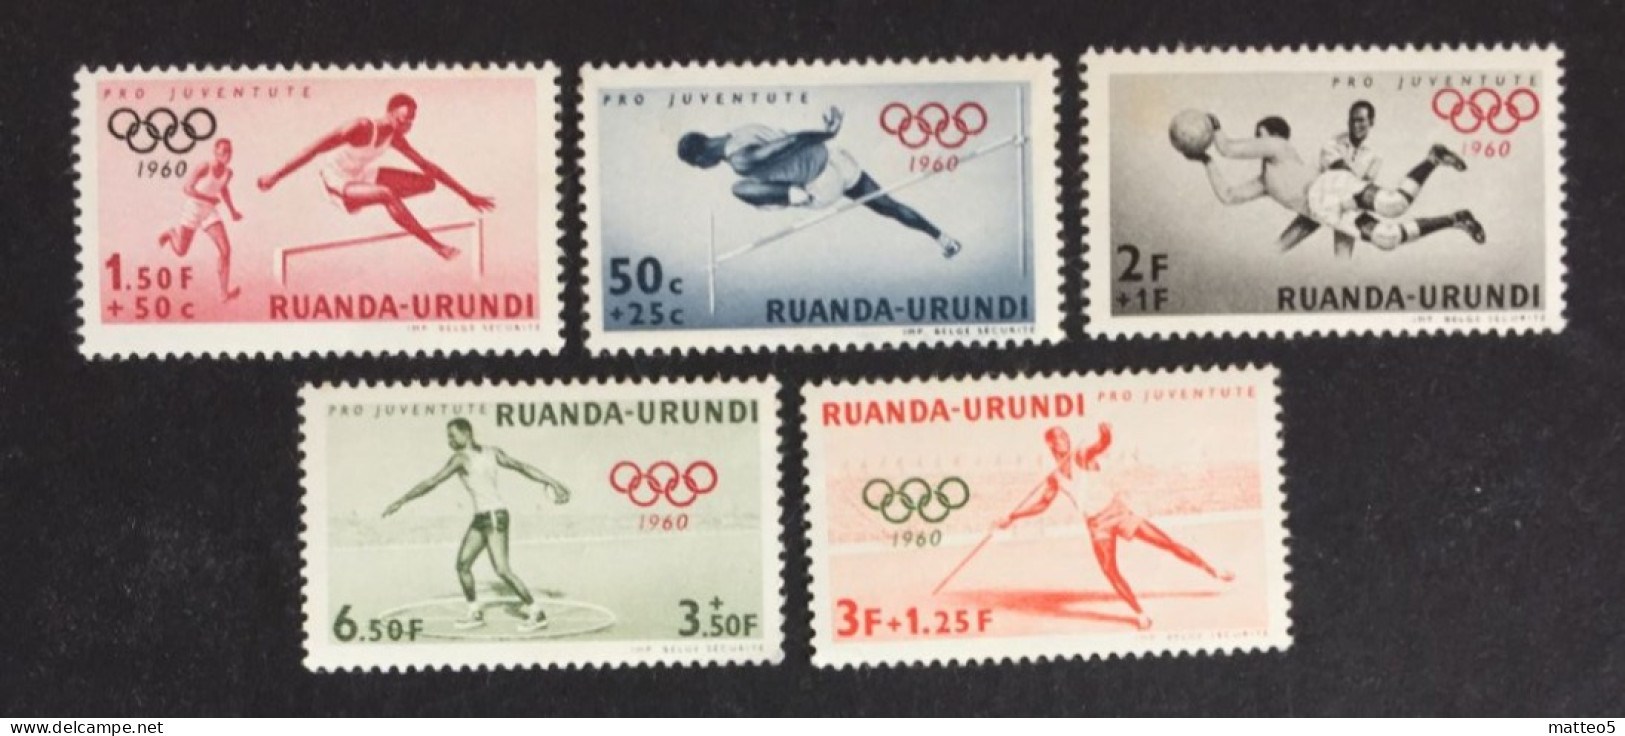 1960 - Rwanda Urundi - Summer Olympic Games 1960 - Rome - 5 Stamps Unused - Neufs